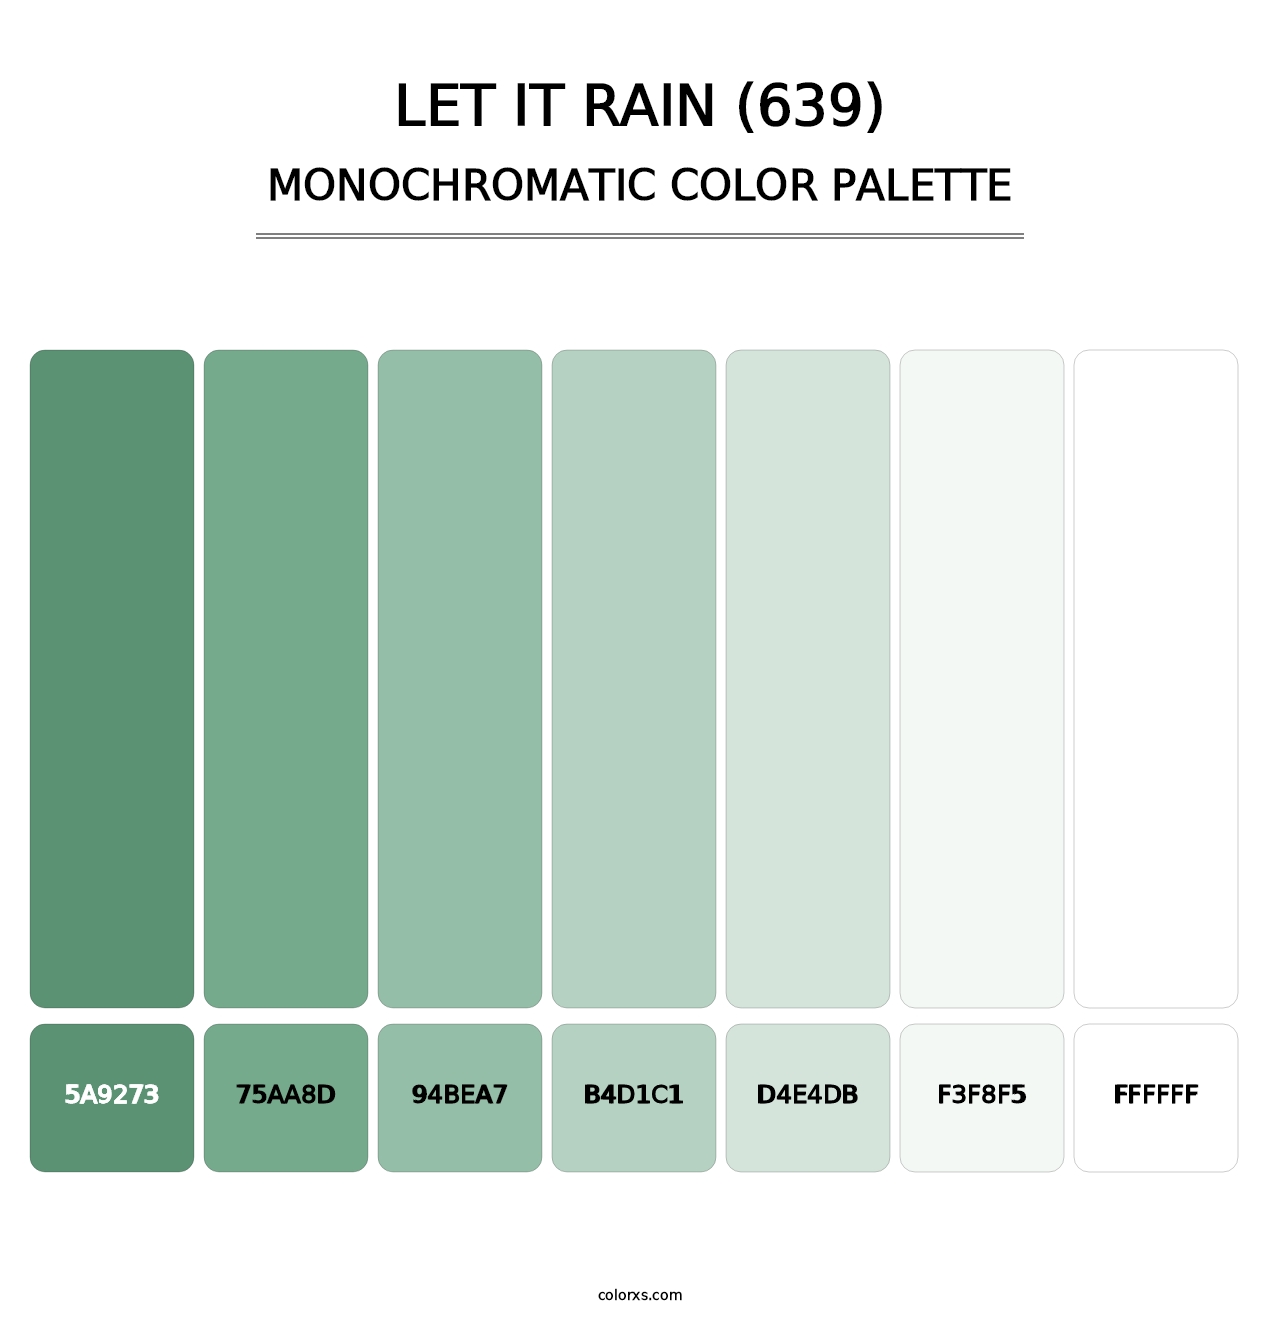 Let It Rain (639) - Monochromatic Color Palette